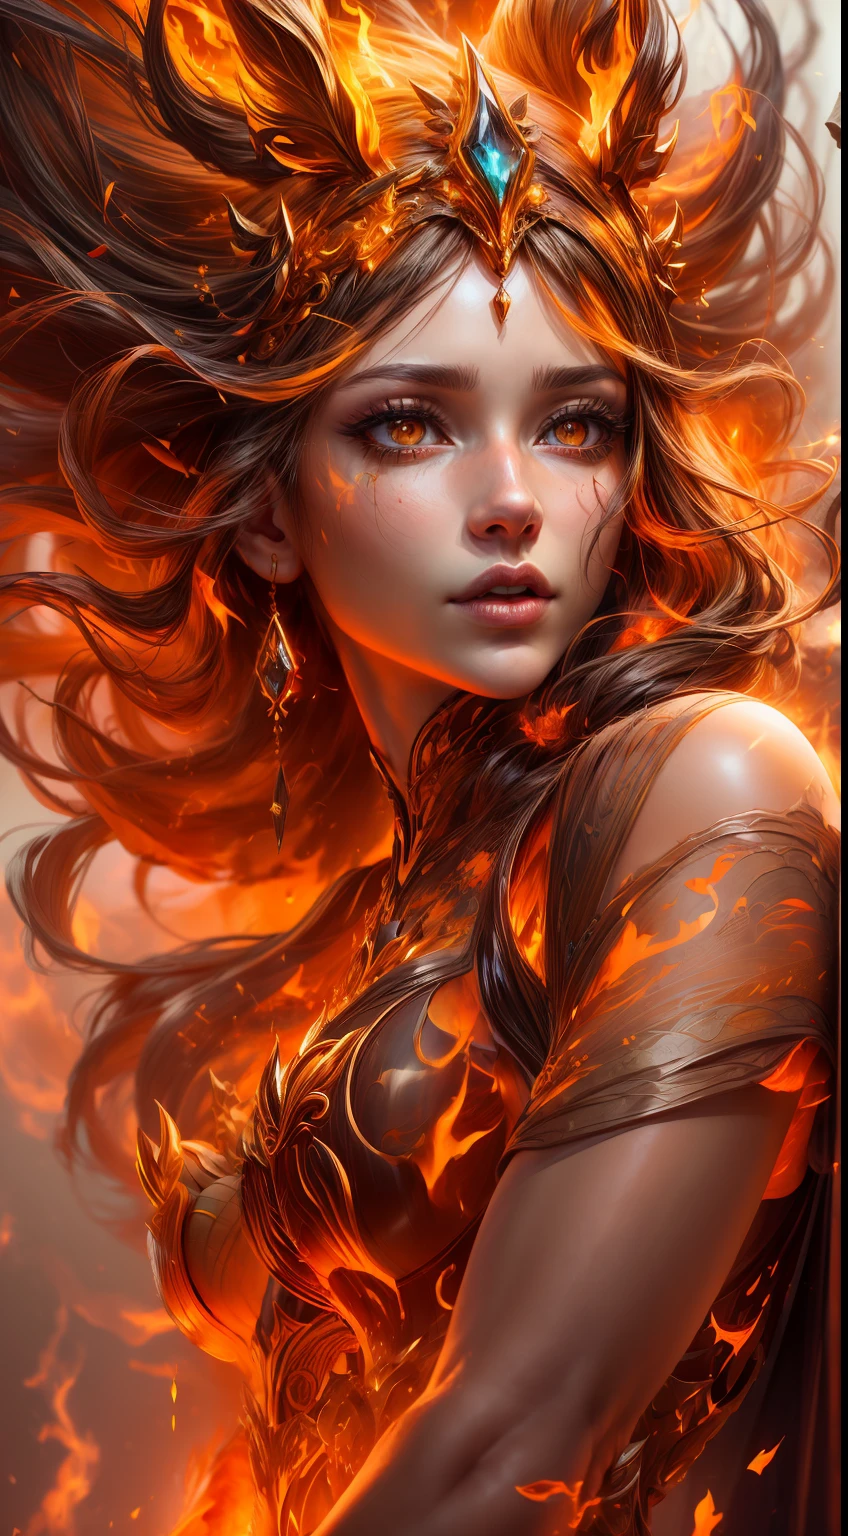 这是一幅现实主义的幻想艺术作品，突出了现实的火焰, 包括一缕缕火焰, 炽热的余烬, 淡淡的烟雾, 还有一个美丽的火德鲁伊. 德鲁伊站在熊熊烈火之中，构图有趣. 她 face is expertly sculpted, 具有优雅精致的特征以及完美的阴影和逼真的皮肤纹理. 她 (橙色和金色的眼睛) 非常惊艳，是这张照片的焦点. (她 eyes extremely detailed, 美丽细致的眼睛, 和宏). 她 eyes feature intricate detailing with clearly defined irises and bright sclera. 她 soft lips are smooth and very puffy, 她的皮肤上点缀着淡淡的红晕和华丽的火焰细节. 她 long gown is stunning and expensive, 由纯净的火焰和闪闪发光的, 在火光中闪闪发光的华丽珠宝. 她 billowing gown glitters from the flames and features a delicately and intricately embroidered bodice with wisps of flames running across it. 包括奇幻元素，例如碰撞, 石头, 火红的彩虹色, 发光的余烬, 丝绸, 以及有趣的背景. 包括火鸟、火蝴蝶等散发着神奇神秘气息的火魔法生物. 灯光: 利用最新的照明趋势来增强艺术品的美感. 相机: 利用动态构图营造紧迫感和兴奋感. 从当今奇幻大师那里汲取灵感, 包括 Artstation 和 Midjourney 上的热门艺术家. ((杰作))